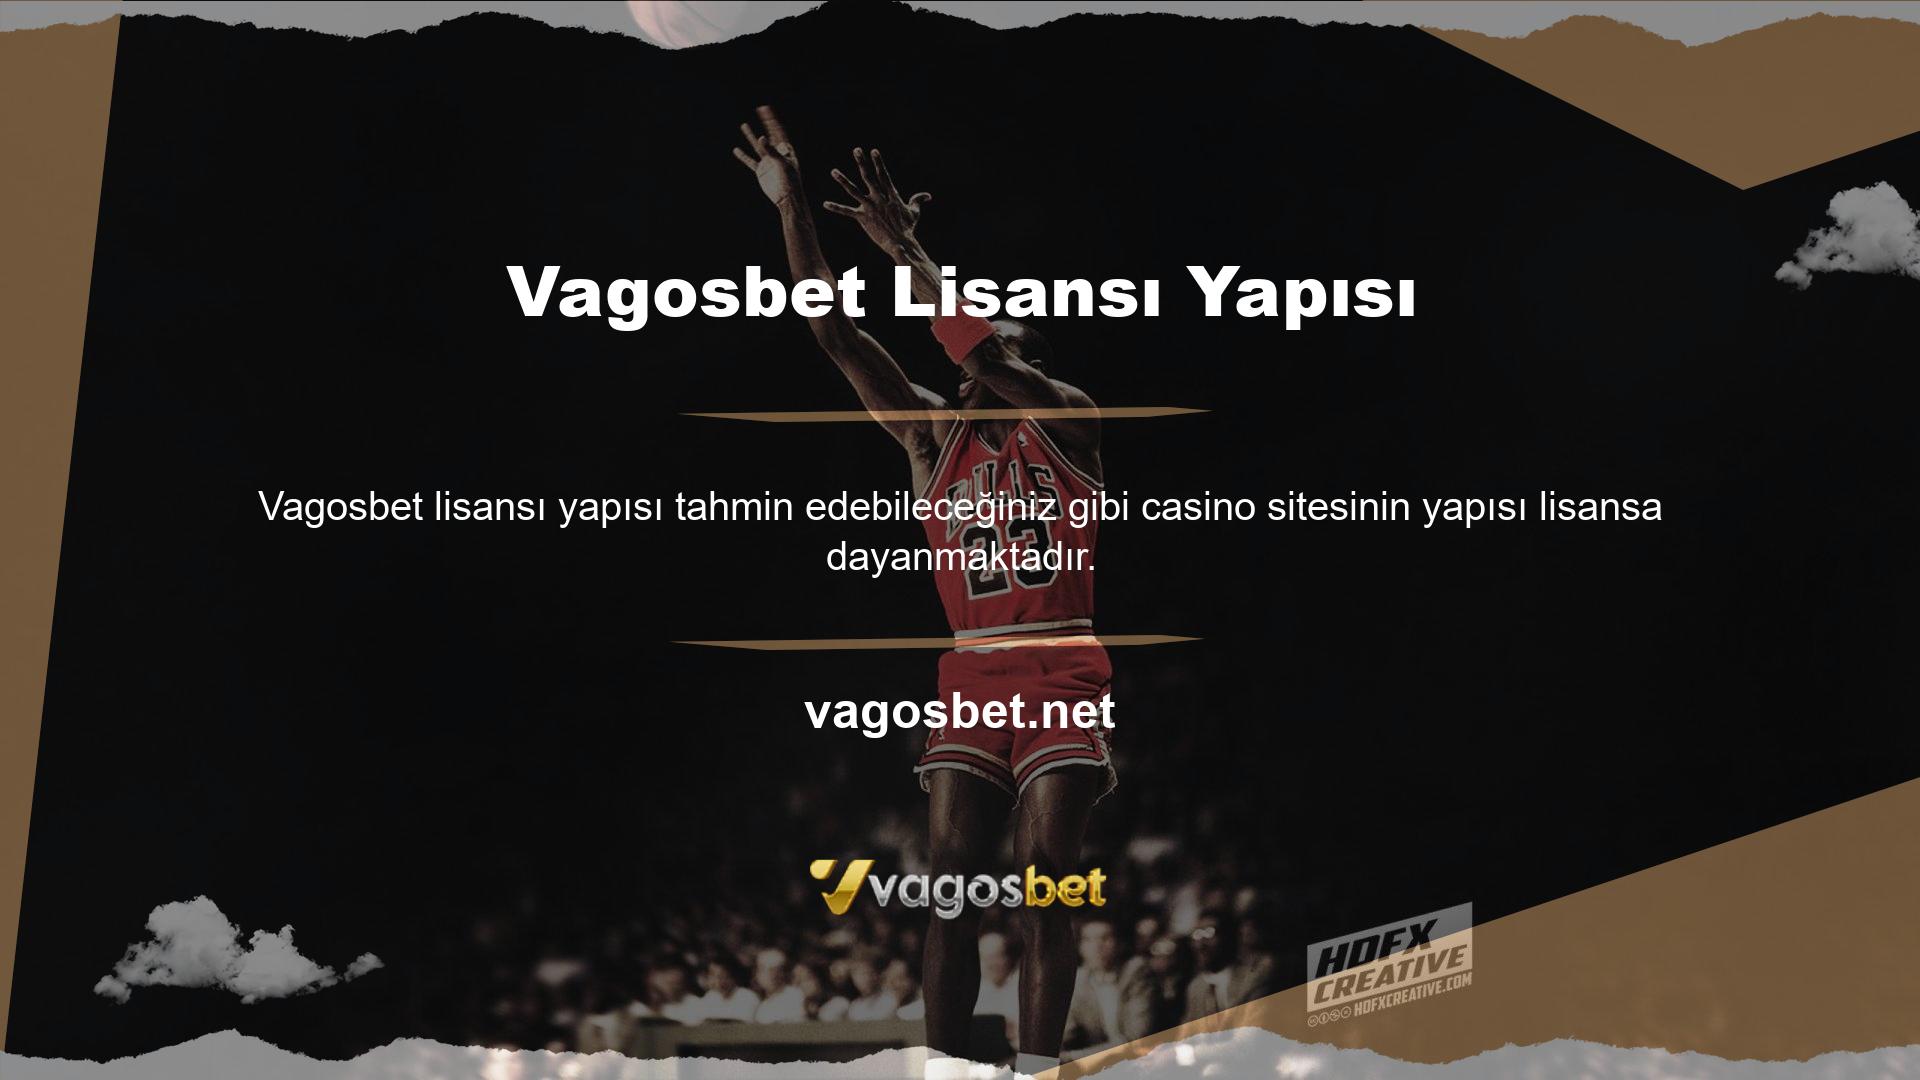 Vagosbet gibi bahis siteleri temel olarak mevcut bahis seçenekleri arasında casino oyunlarını da sunmaktadır